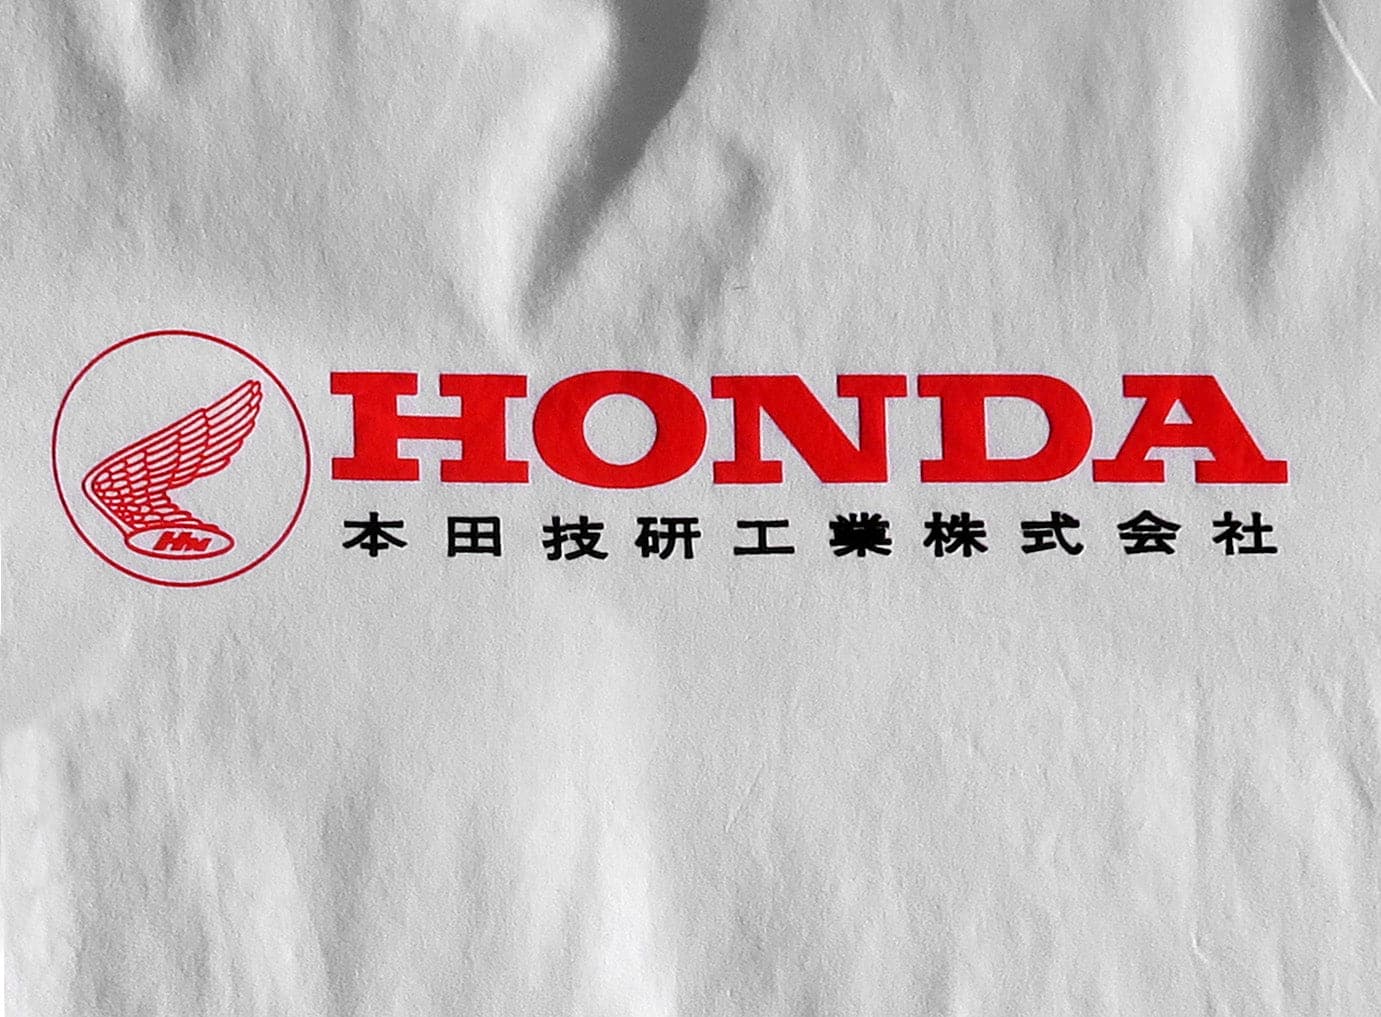 1964 Honda Brand Tee